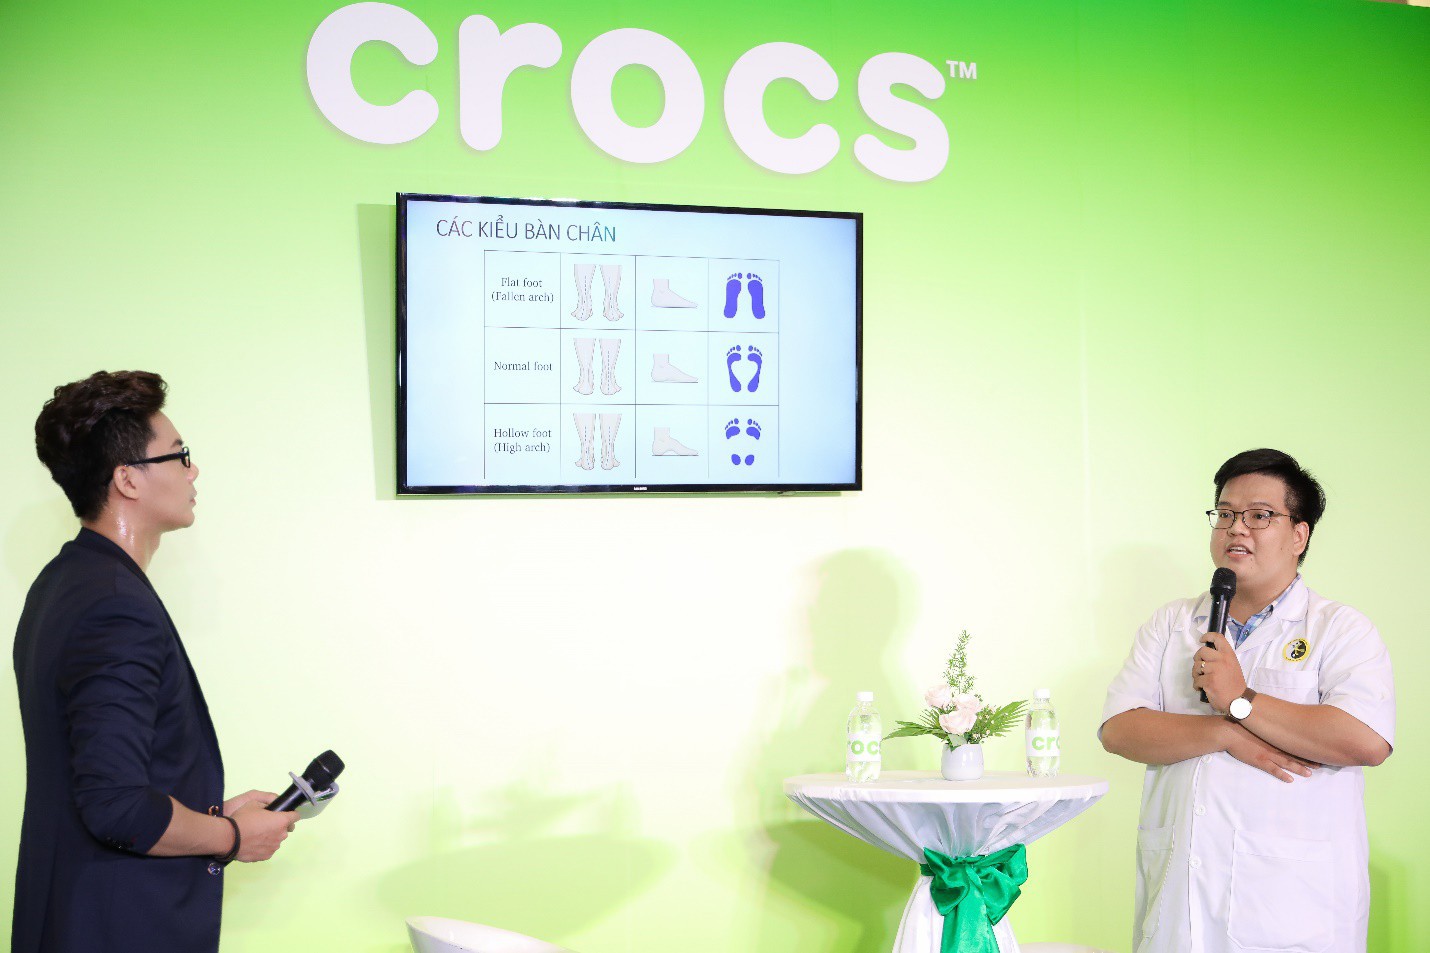 Nhung Gumiho và Ốc Thanh Vân tham gia sự kiện Crocs ra mắt 3 dòng sản phẩm mới, lý giải vì sao ai cũng nên sở hữu ít nhất 1 đôi đến từ thương hiệu này - Ảnh 3.